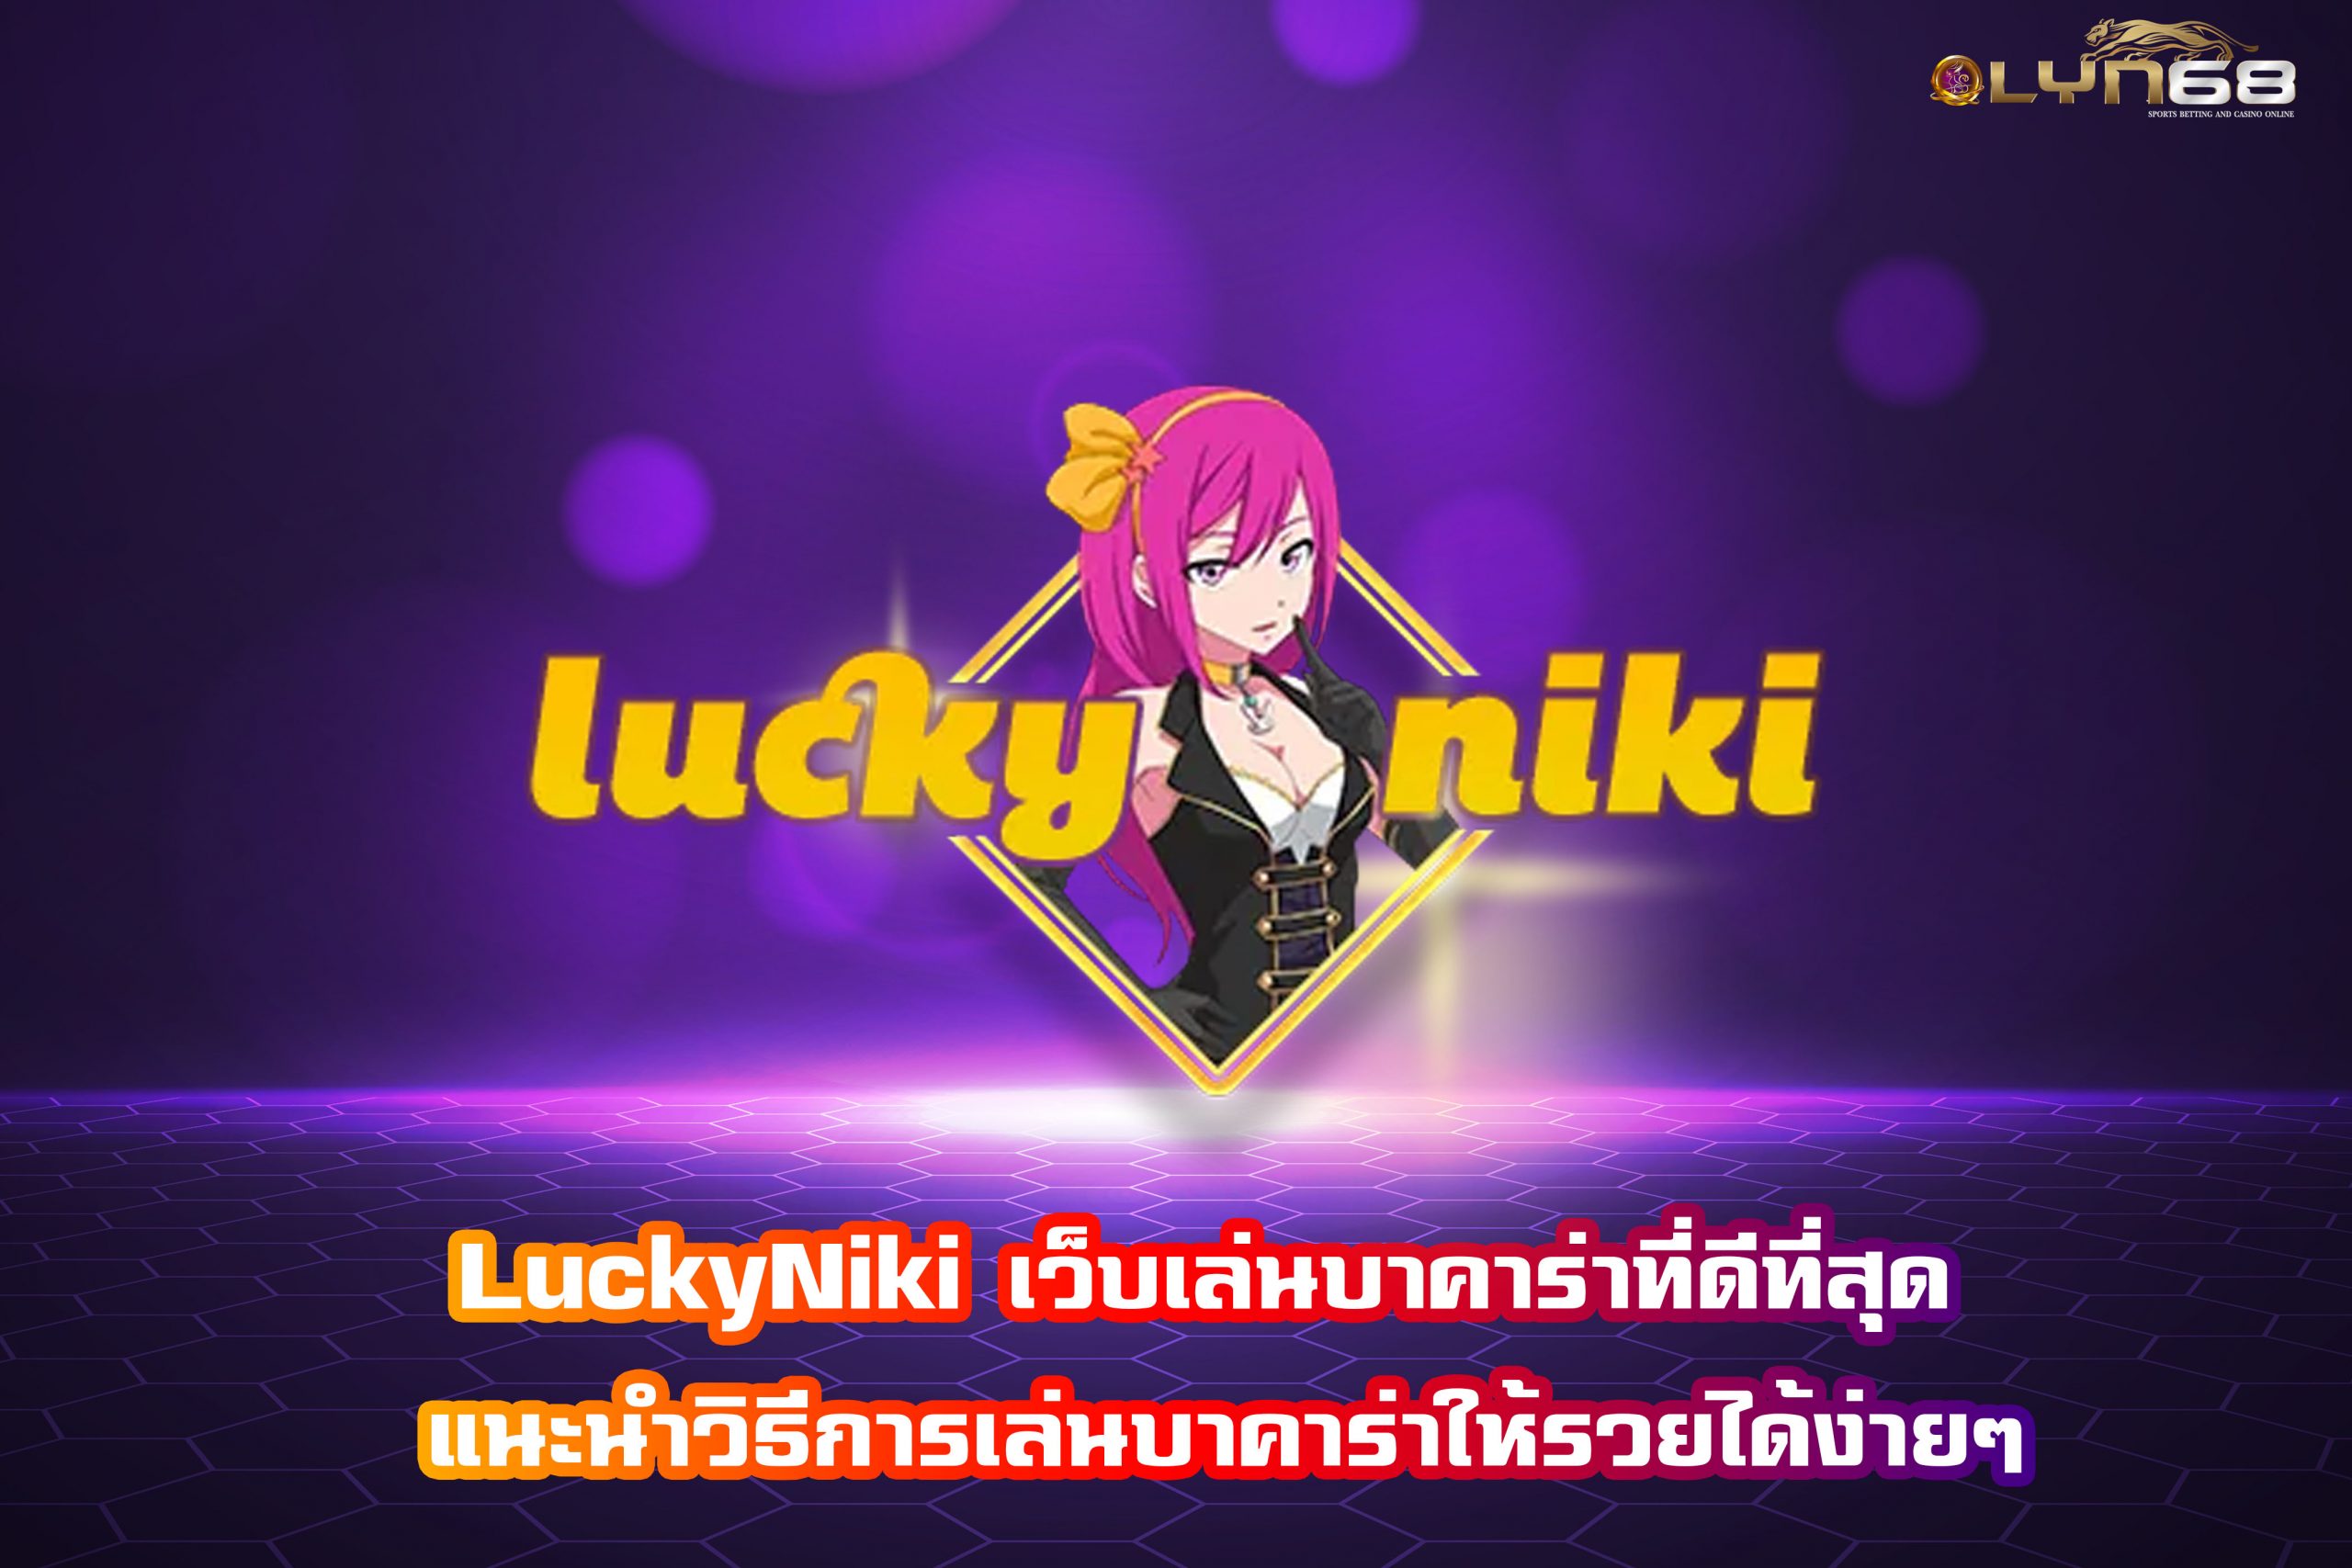 LuckyNiki เว็บเล่นบาคาร่าที่ดีที่สุด แนะนำวิธีการเล่นบาคาร่าให้รวยได้ง่ายๆ